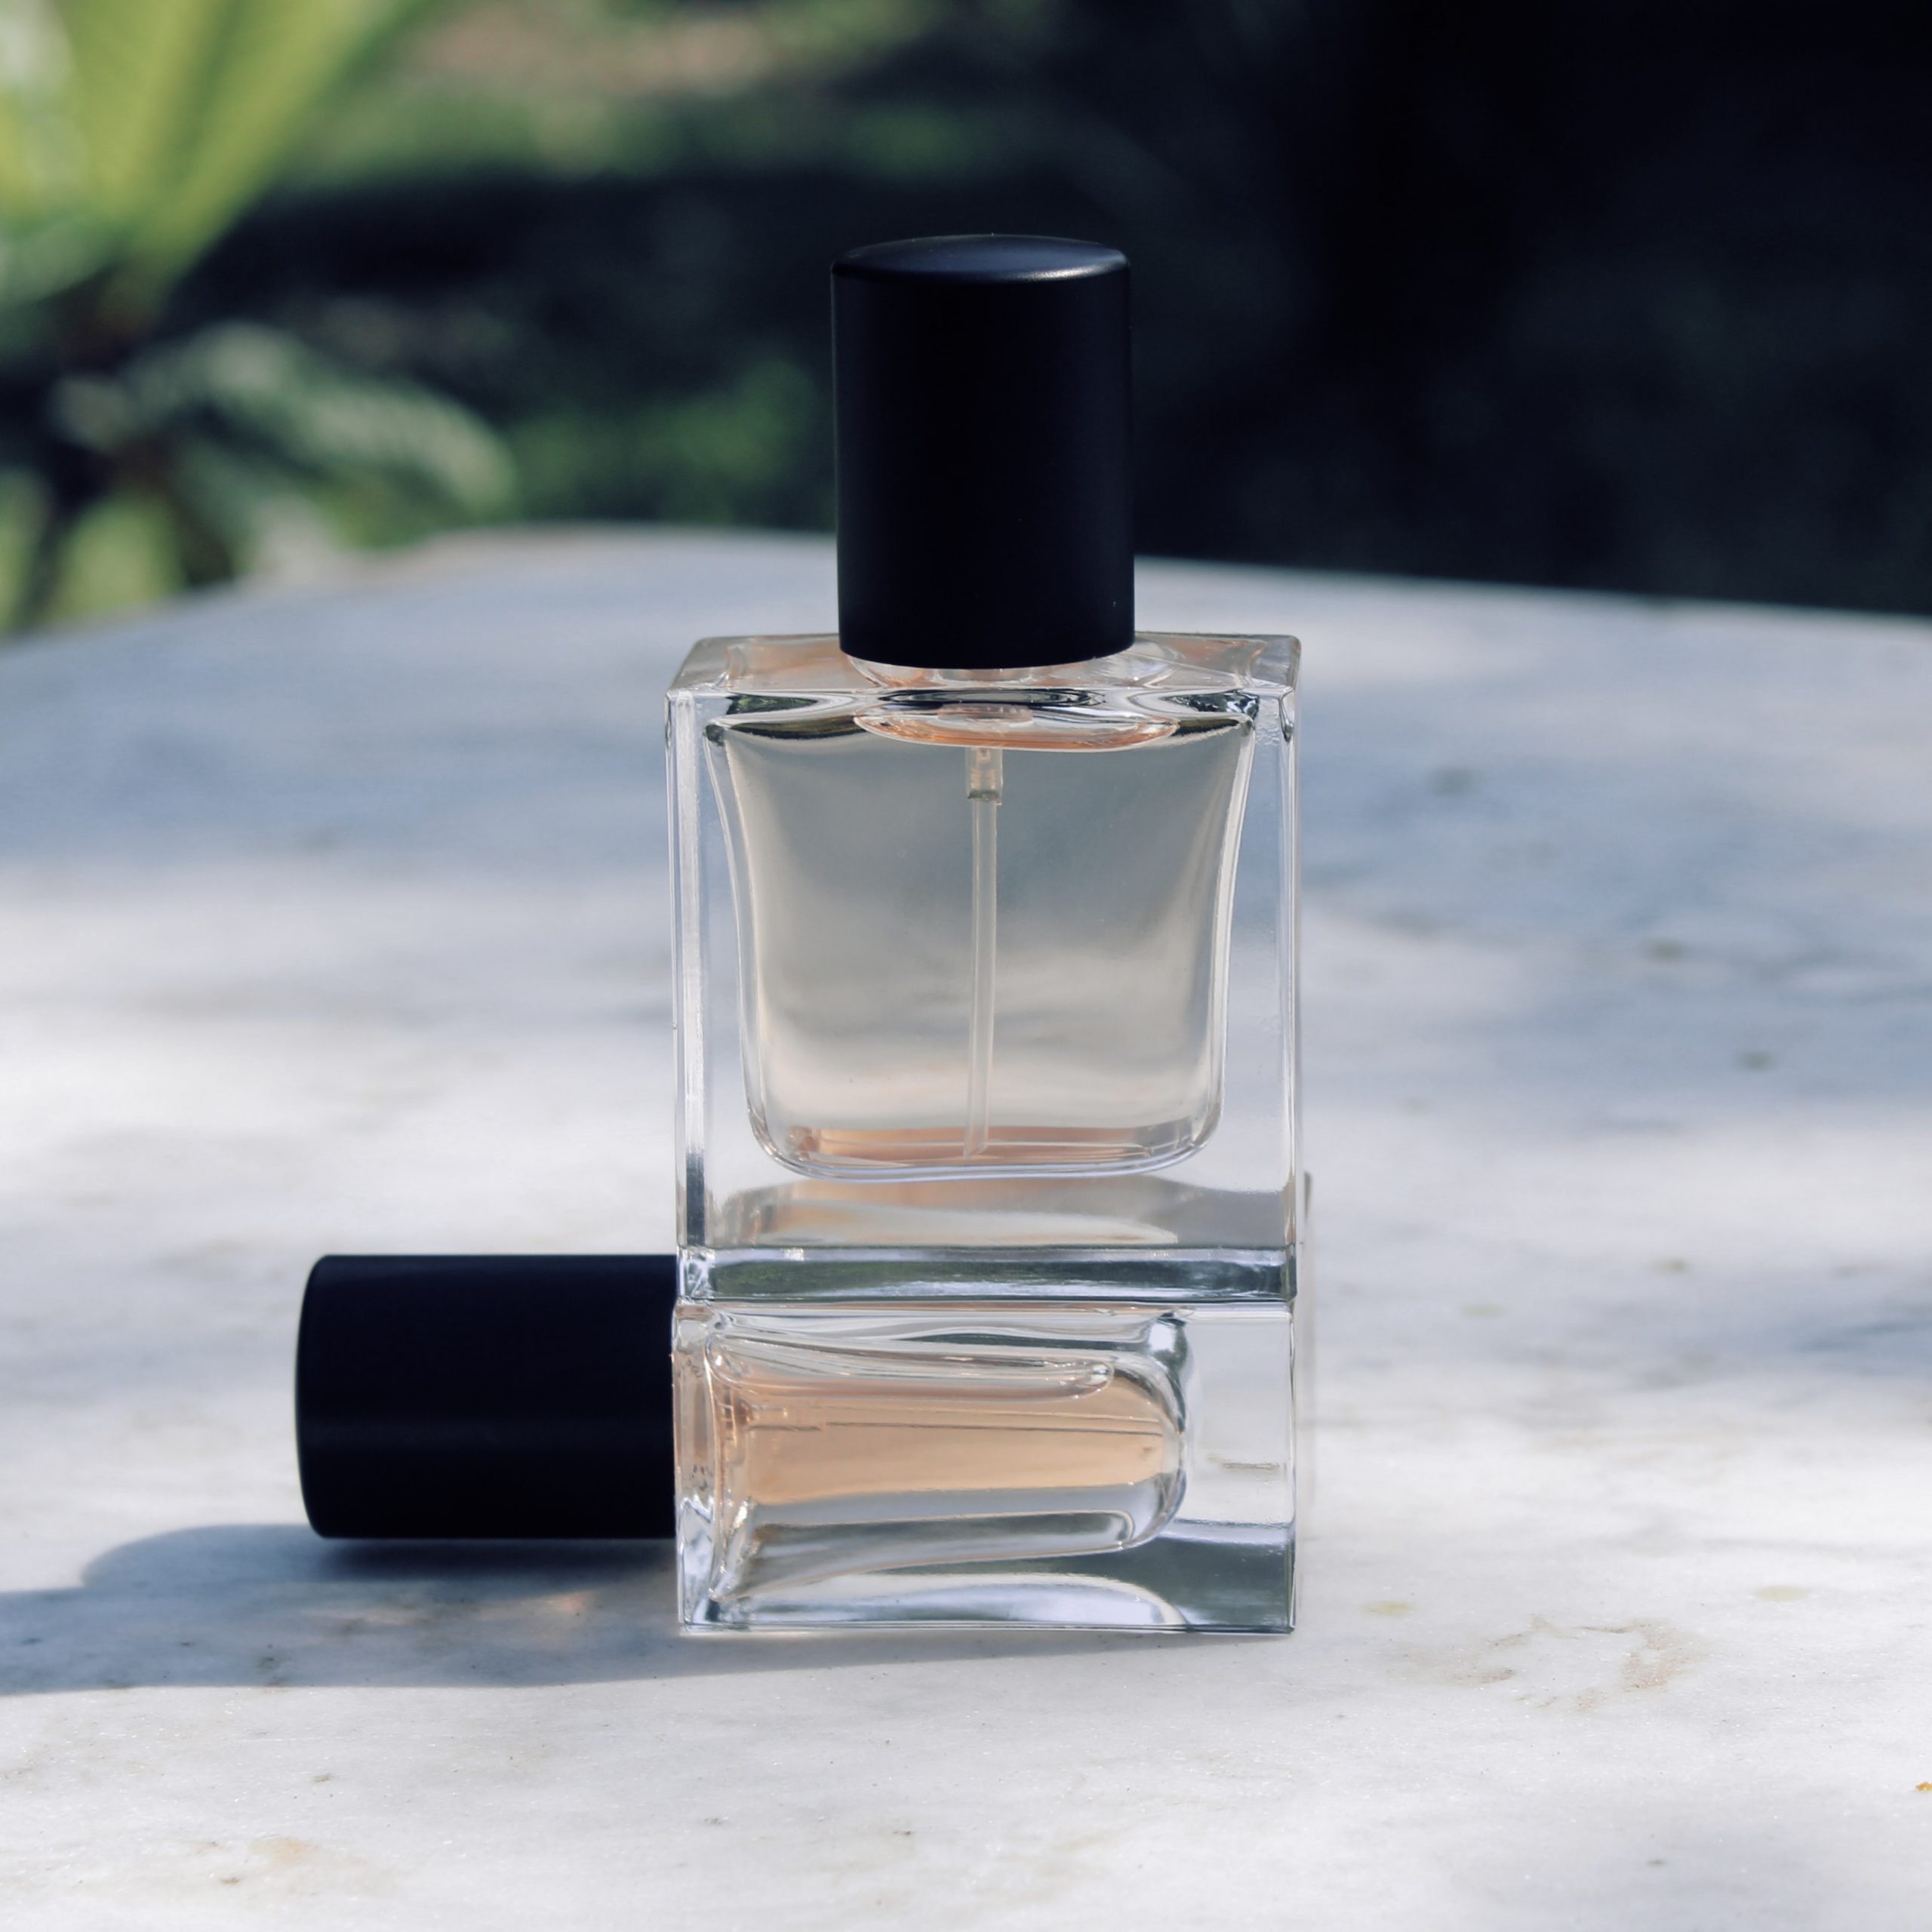 Tom Ford damskie perfumy – Styl i elegancja w jednym flakonie.